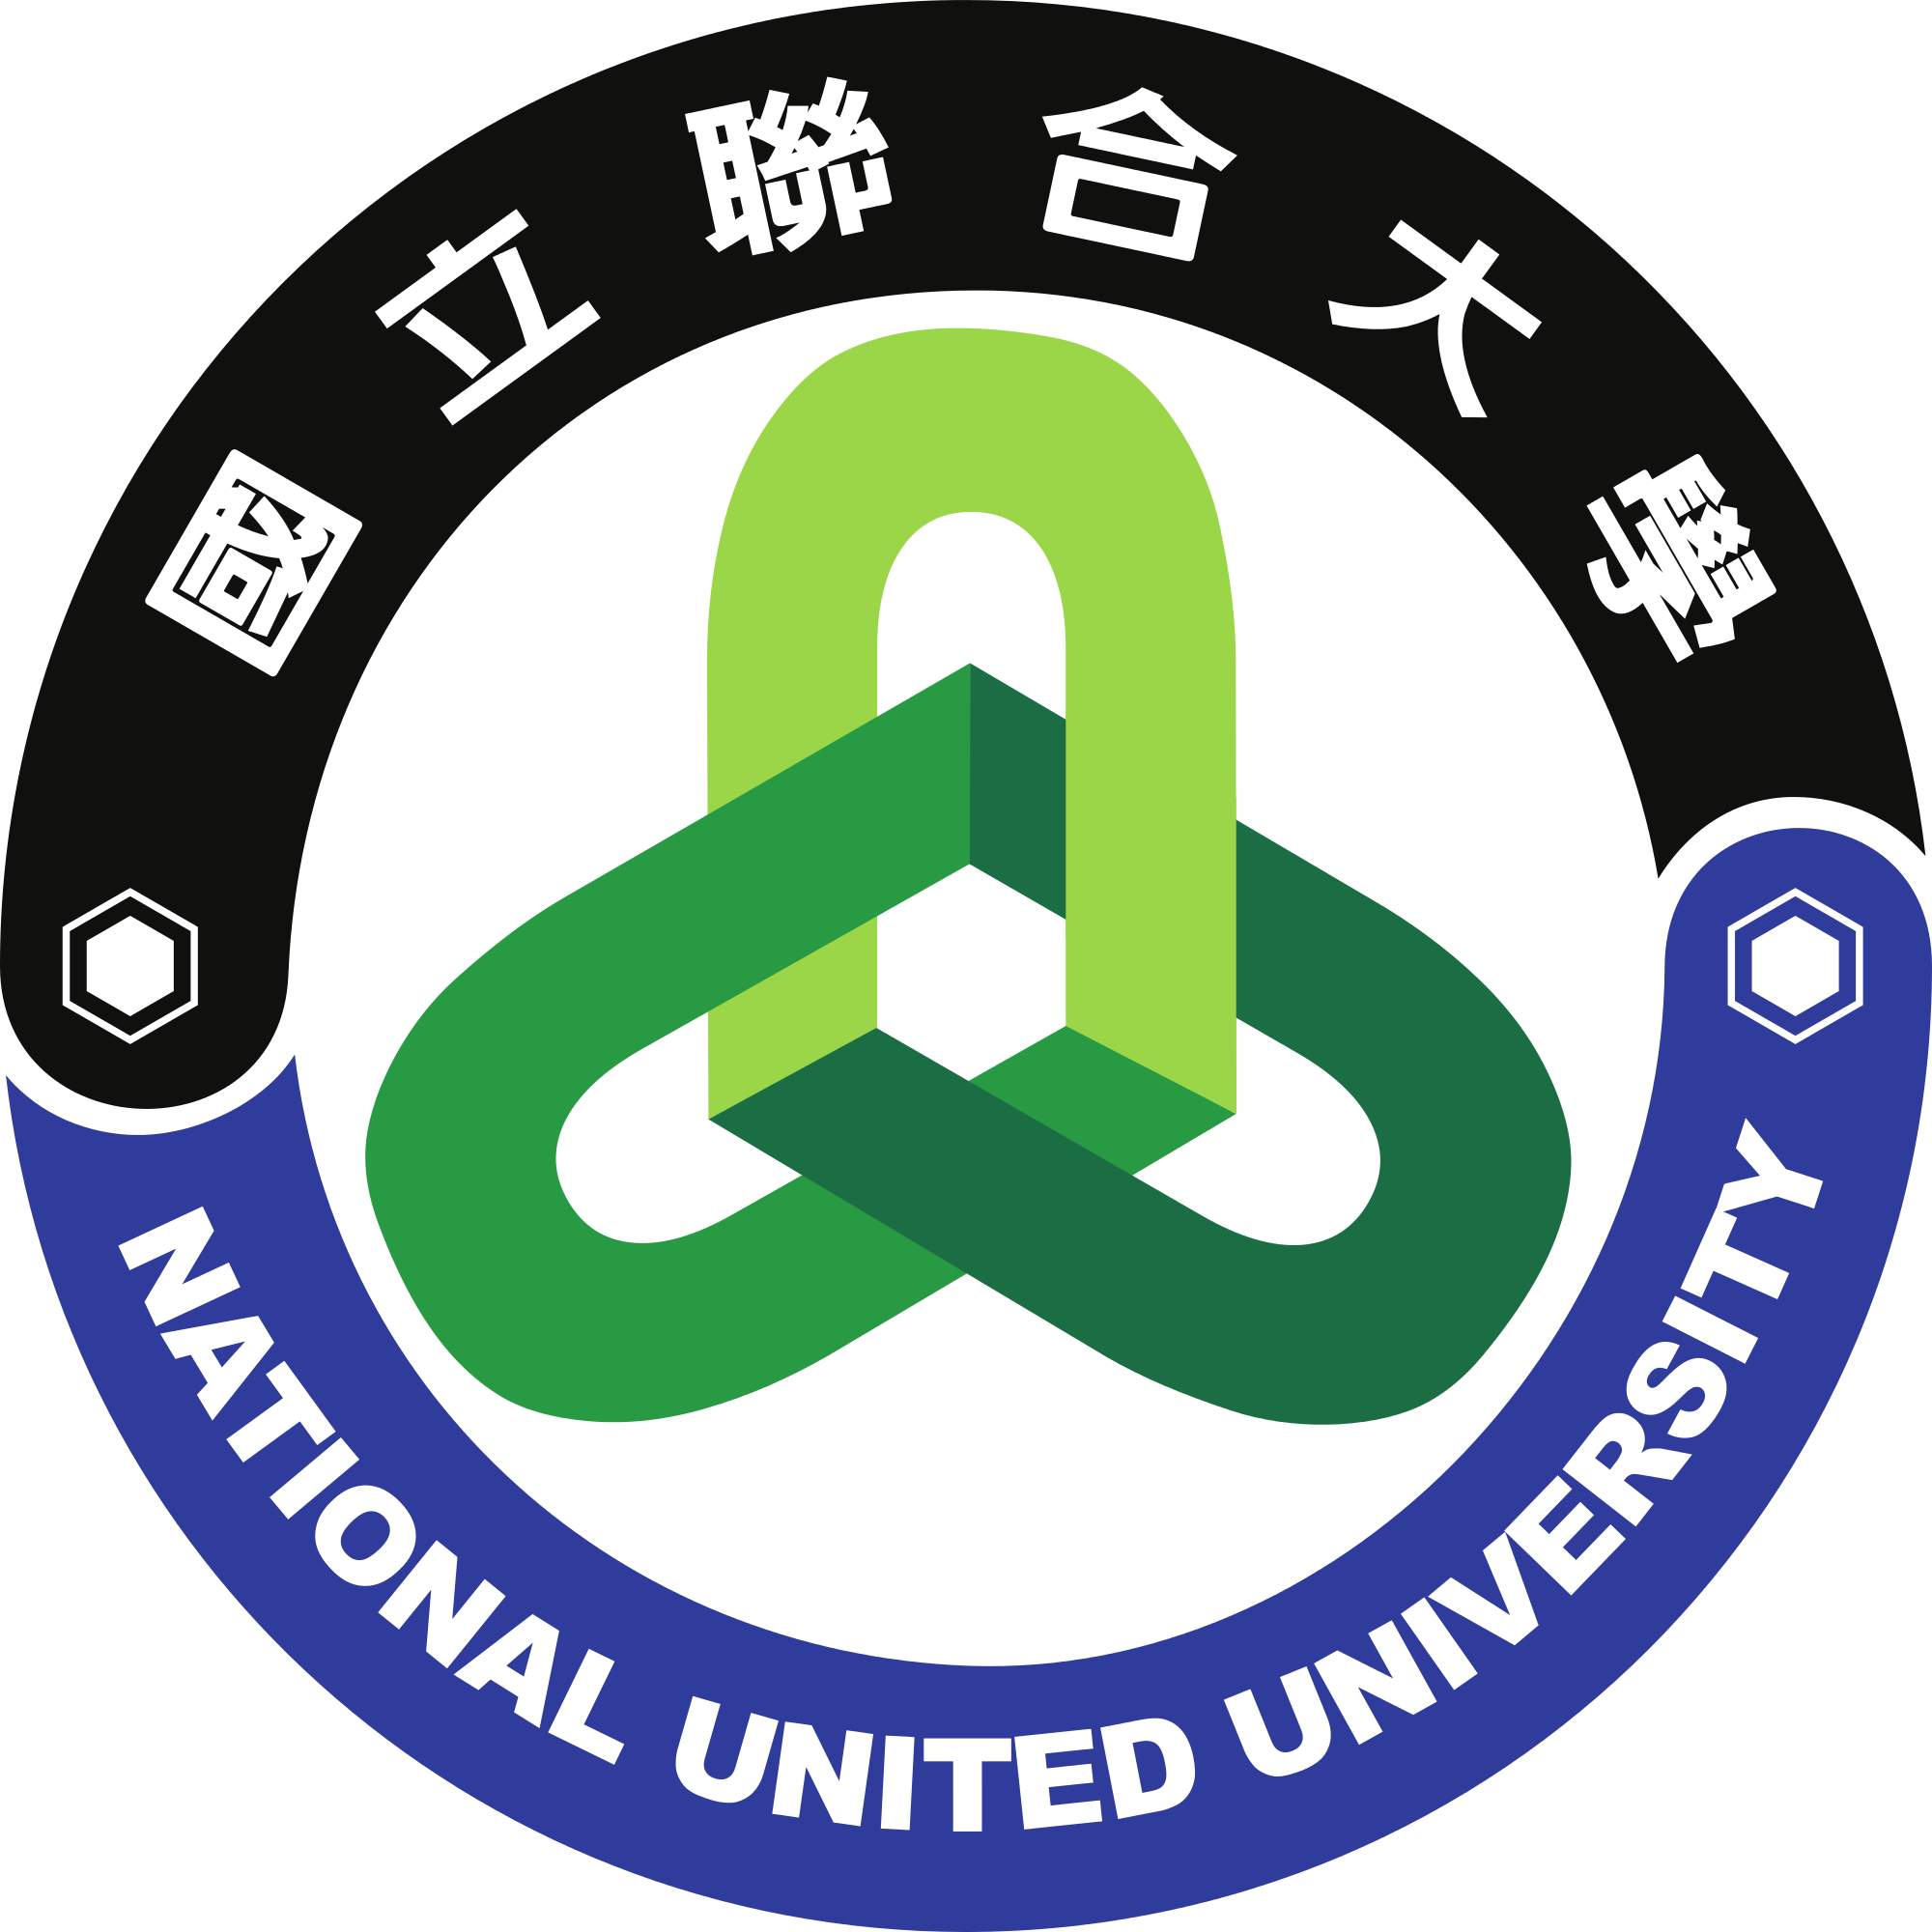 National United University